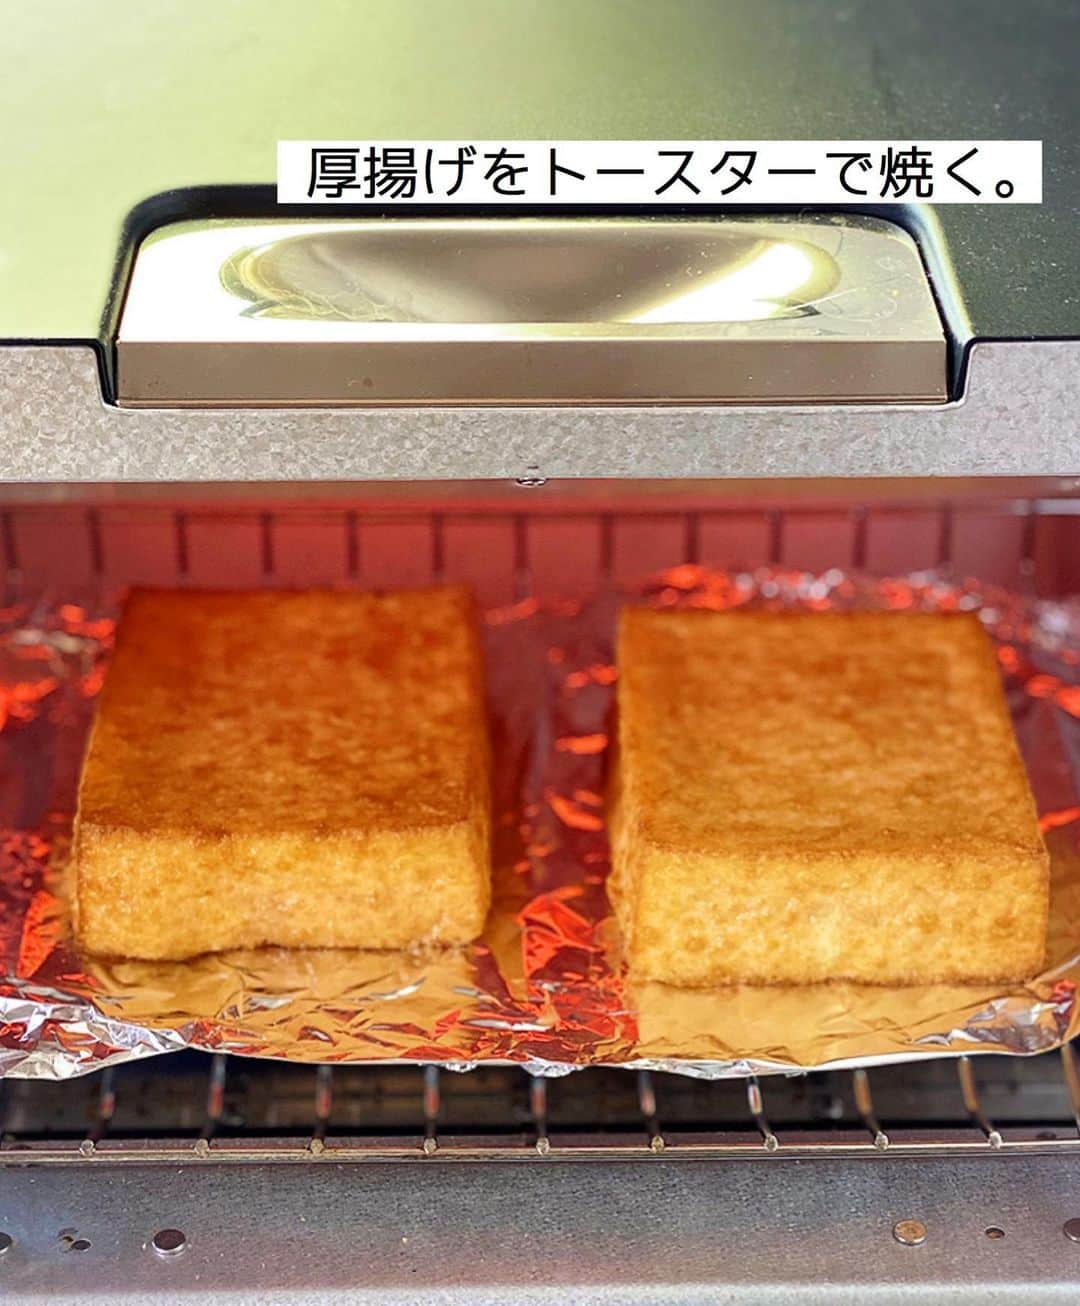 Mizuki【料理ブロガー・簡単レシピ】さんのインスタグラム写真 - (Mizuki【料理ブロガー・簡単レシピ】Instagram)「・﻿ 【レシピ】ーーーーーーーーー﻿ ♡厚揚げの焼肉おろしのせ♡﻿ ーーーーーーーーーーーーーー﻿ ﻿ ﻿ ﻿ おはようございます(*^^*)﻿ ﻿ 今日ご紹介させていただくのは﻿ 厚揚げの焼肉おろしのせ♡﻿ トースターで焼いた厚揚げに﻿ 豚こま焼肉×大根おろしをのせた﻿ ボリュームおかずです♩﻿ ﻿ しっかり食べ応えがあって﻿ コスパも抜群ですよ〜(*´艸`)﻿ とっても簡単にできるので﻿ よかったらお試し下さいね♩﻿ ﻿ ﻿ ﻿ ーーーーーーーーーーーーーーーーーーーー﻿ 【2人分】﻿ 厚揚げ...正方形の2枚﻿ 豚こま切れ肉...150g﻿ ごま油...小1﻿ ●焼肉のたれ...大3﻿ ●マヨネーズ...大1﻿ 大根おろし...5cm分﻿ (あれば)万能ねぎ...適量﻿ ﻿ 1.厚揚げはトースターで焼いて温める。﻿ 2.フライパンにごま油を中火で熱して豚肉を炒める。火が通ったら●を加えて煮からめる。﻿ 3.器に厚揚げを盛り、2と大根おろしをのせ、斜め切りにしたねぎをトッピングする。﻿ ーーーーーーーーーーーーーーーーーーーー﻿ ﻿ ﻿ ﻿ 《ポイント》﻿ ♦︎豚バラで作ってもOK♩﻿ ♦︎厚揚げは表面がカリッとなるまで焼いて下さい♩﻿ ﻿ ﻿ ﻿ ﻿ ﻿ ﻿ ＿＿＿＿＿＿＿＿＿＿＿＿＿＿＿＿＿﻿ 🎀6刷重版しました🎀﻿ 混ぜて焼くだけ。はじめてでも失敗しない！﻿ 【#ホットケーキミックスのお菓子 】﻿ ﻿ 一冊まるっとホケミスイーツ♩﻿ 普段のおやつから﻿ 特別な日にも使えるレシピを﻿ この一冊に詰め込みました(*^^*)﻿ ホットケーキミックスを使えば﻿ 簡単に本格的なお菓子が作れますよ♡﻿ ＿＿＿＿＿＿＿＿＿＿＿＿＿＿＿＿＿﻿ ﻿ ﻿ ﻿ ＿＿＿＿＿＿＿＿＿＿＿＿＿＿＿＿＿＿＿﻿ 📕6刷重版しました📕﻿ 簡単・時短！ 毎日のごはんがラクになる﻿ ✨🦋 【 #Mizukiの今どき和食 】🦋✨﻿ ＿＿＿＿＿＿＿＿＿＿＿＿＿＿＿＿＿＿＿﻿ なるべく少ない材料で﻿ 手間も時間も省きながら﻿ 簡単にできるおいしい和食レシピ♩﻿ 簡単に失敗なくマスターできる一冊で﻿ もっと気軽に、カジュアルに﻿ 和食を楽しんで下さいね(*^^*)﻿ ＿＿＿＿＿＿＿＿＿＿＿＿＿＿＿＿＿＿＿﻿ ﻿ ⭐️ストーリー、ハイライト、プロフ画面に﻿ 本のURLを貼らせていただいております♩﻿ →(@mizuki_31cafe )﻿ ﻿ ﻿ ﻿ ﻿ ﻿ #豚こま#厚揚げ#大根おろし#焼肉のたれ#Mizuki#簡単レシピ#時短レシピ#節約レシピ#料理#レシピ#フーディーテーブル#マカロニメイト#おうちごはん#デリスタグラマー#料理好きな人と繋がりたい#おうちごはんlover#写真好きな人と繋がりたい#foodpic#cooking#recipe#lin_stagrammer#foodporn#yummy#厚揚げの焼肉おろしのせm」8月4日 6時58分 - mizuki_31cafe